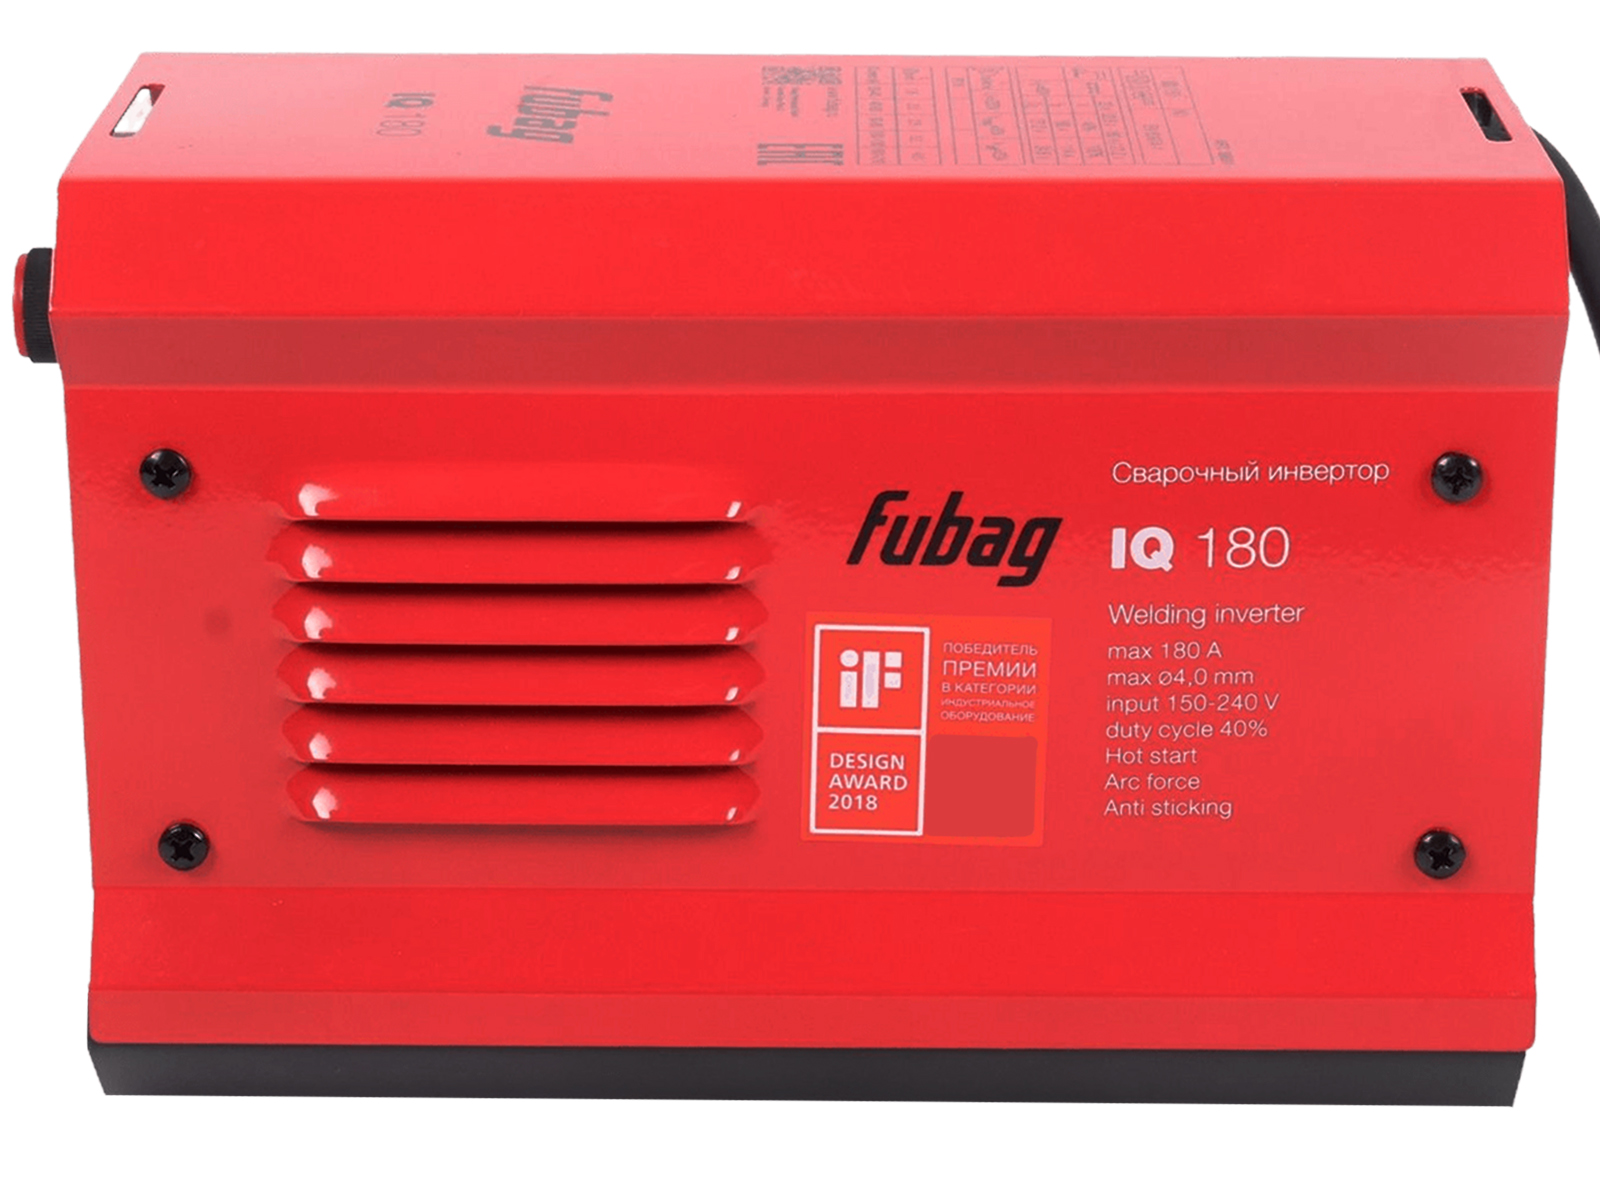 Аппарат сварочный Fubag IQ180 инвертор фотография №4